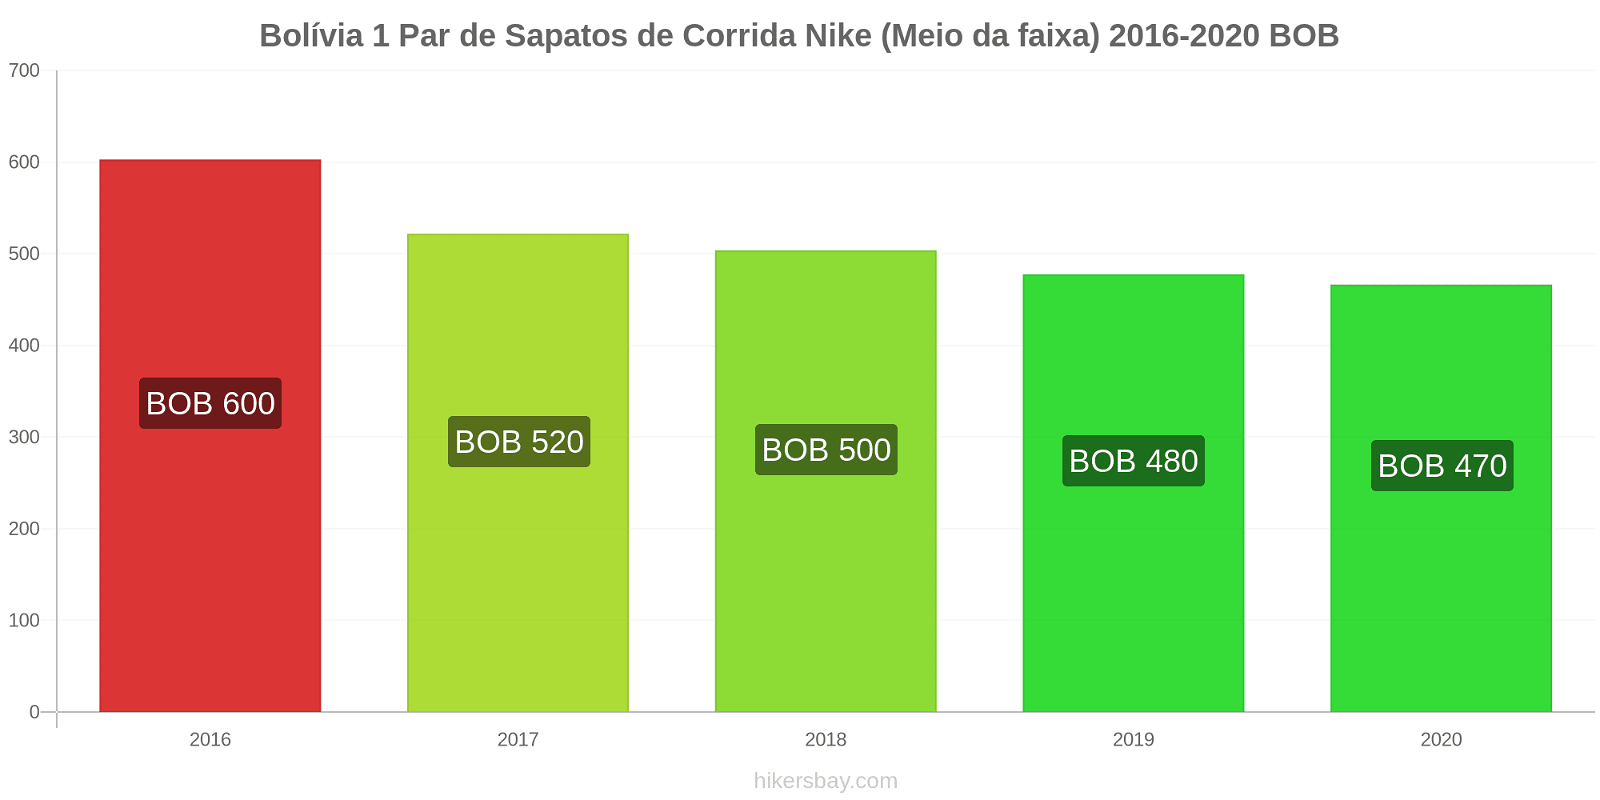 Bolívia variação de preço 1 par de tênis Nike (mid-range) hikersbay.com